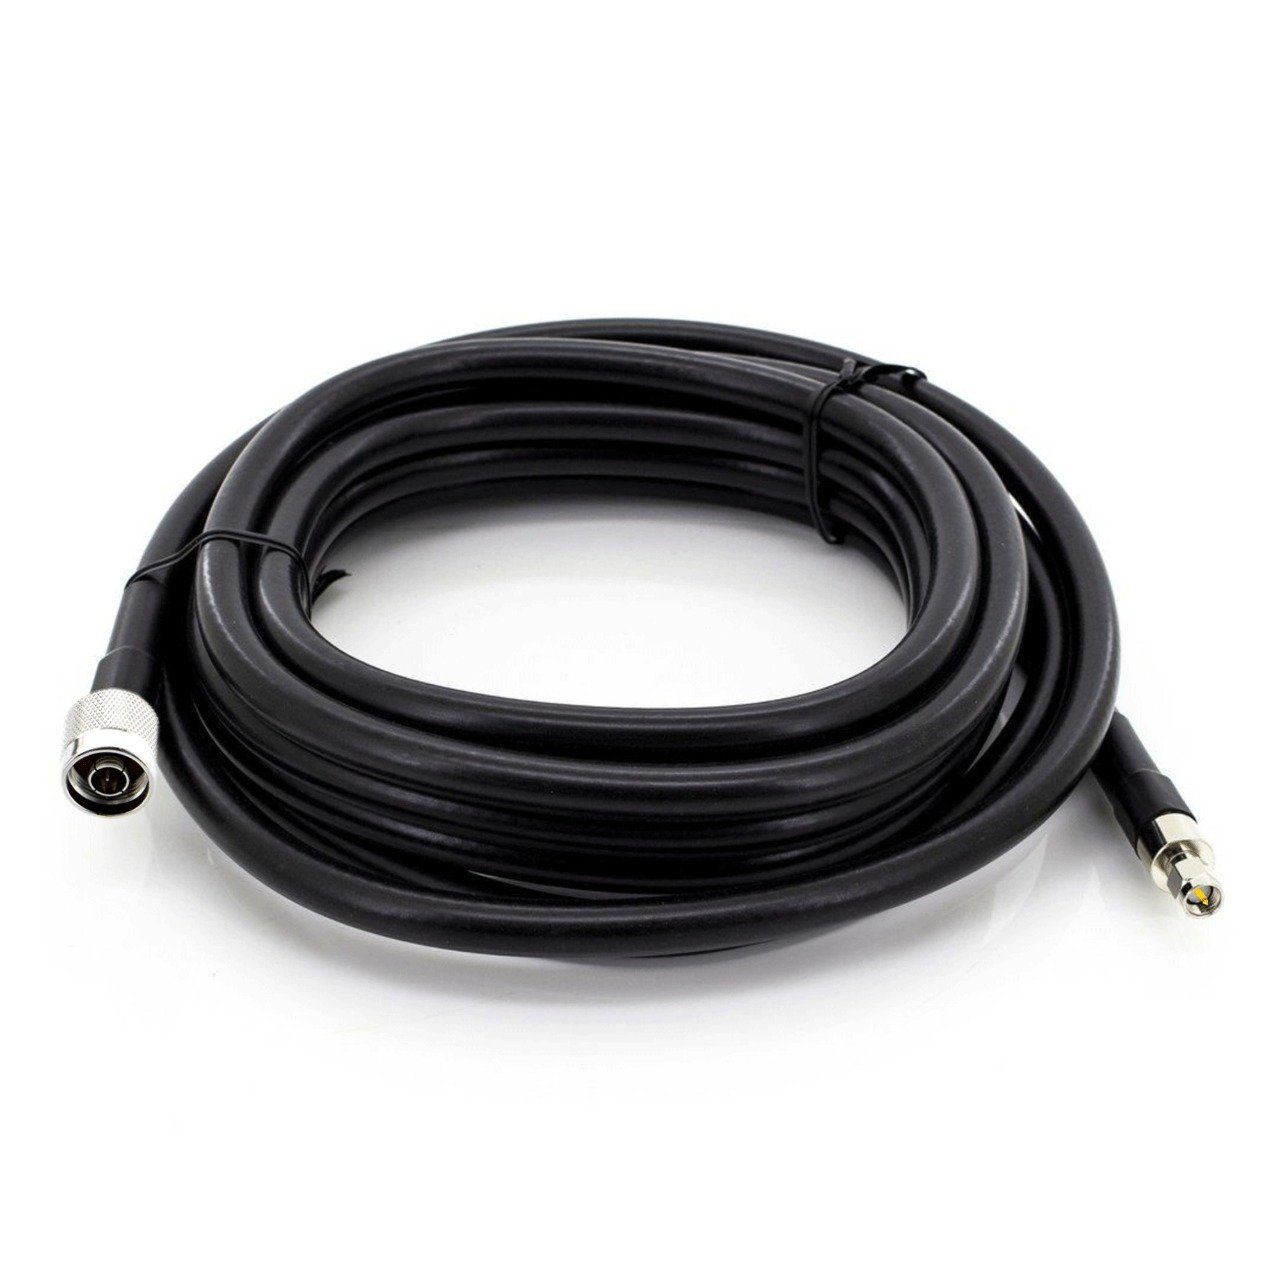 Baker BK-400MM kabel, cm), lte kabel, kabel SMA kabel, Verlängerungskabel, LMR400, 4g N 3g wifi männlich, (200 männlich